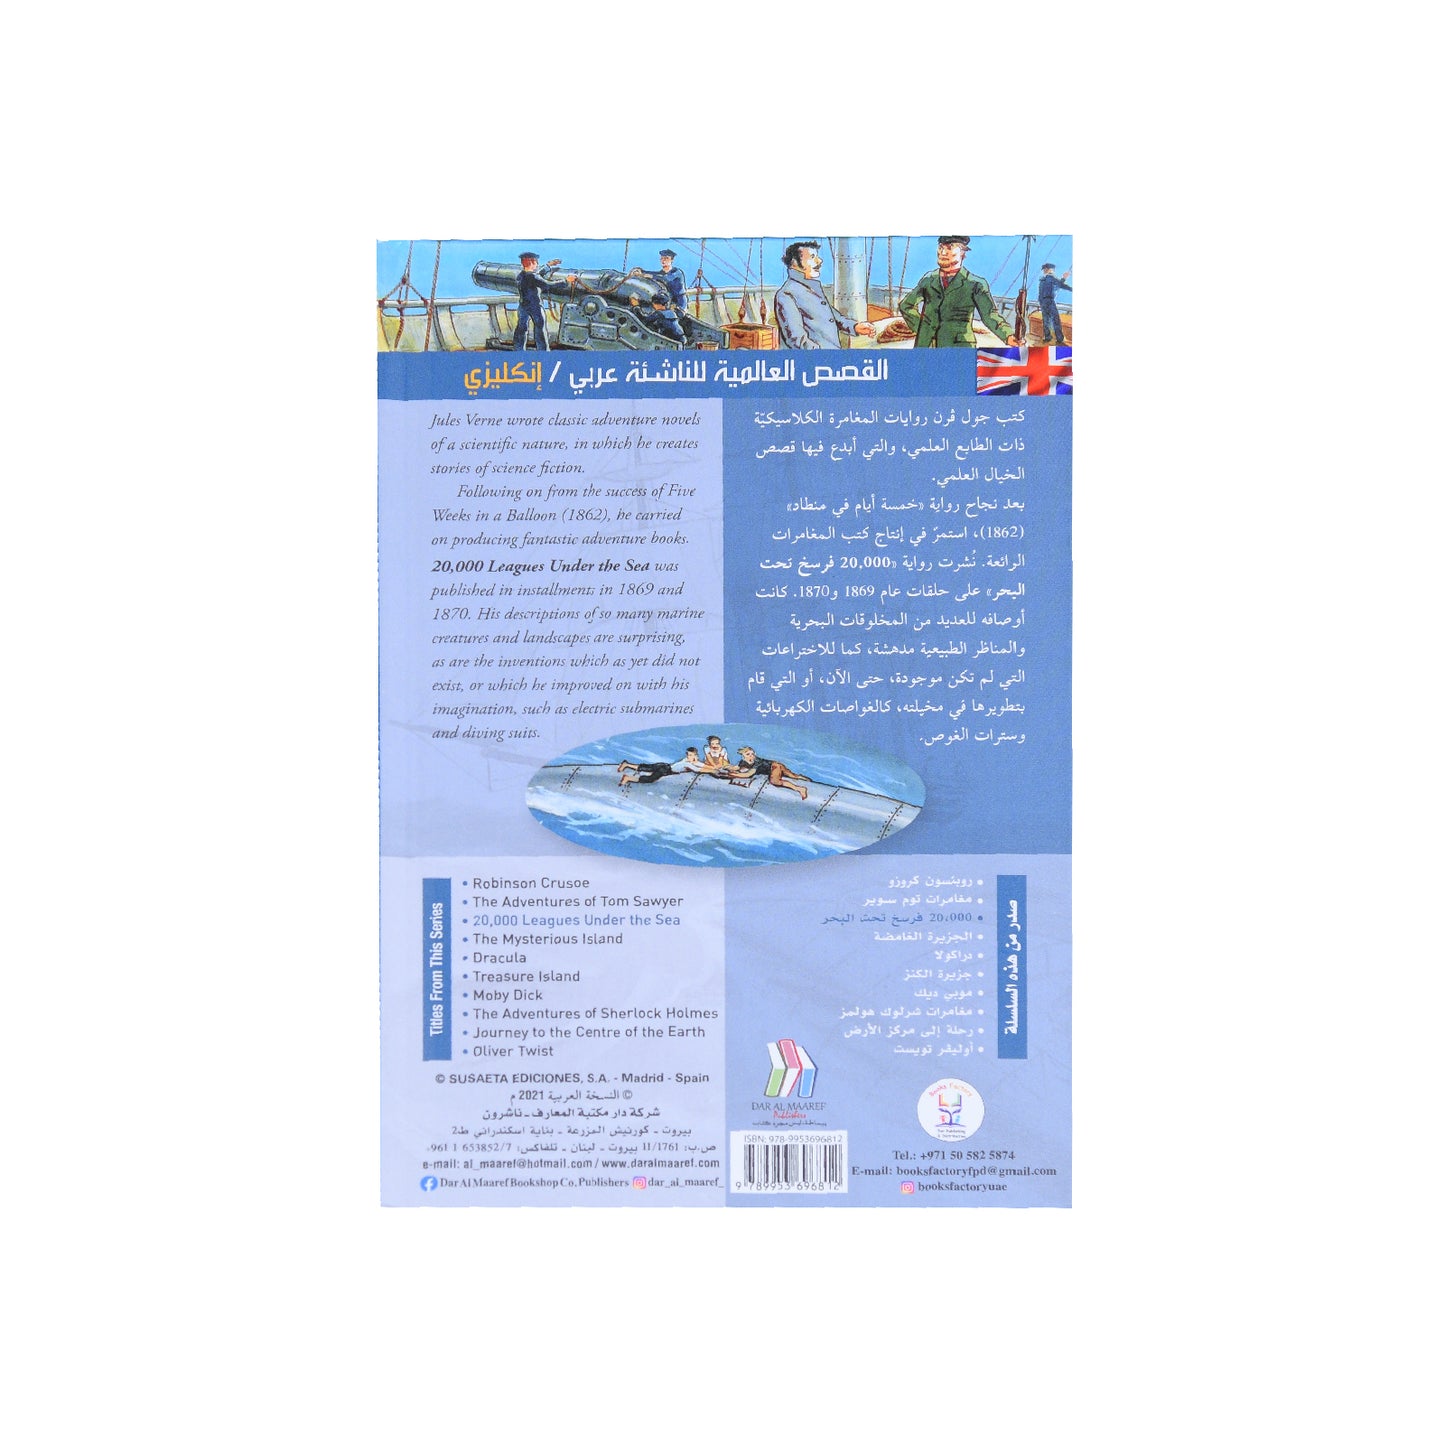 القصص العالمية للناشئة (عربي  انكيزي)  20,000 فرسخ تحت البحر